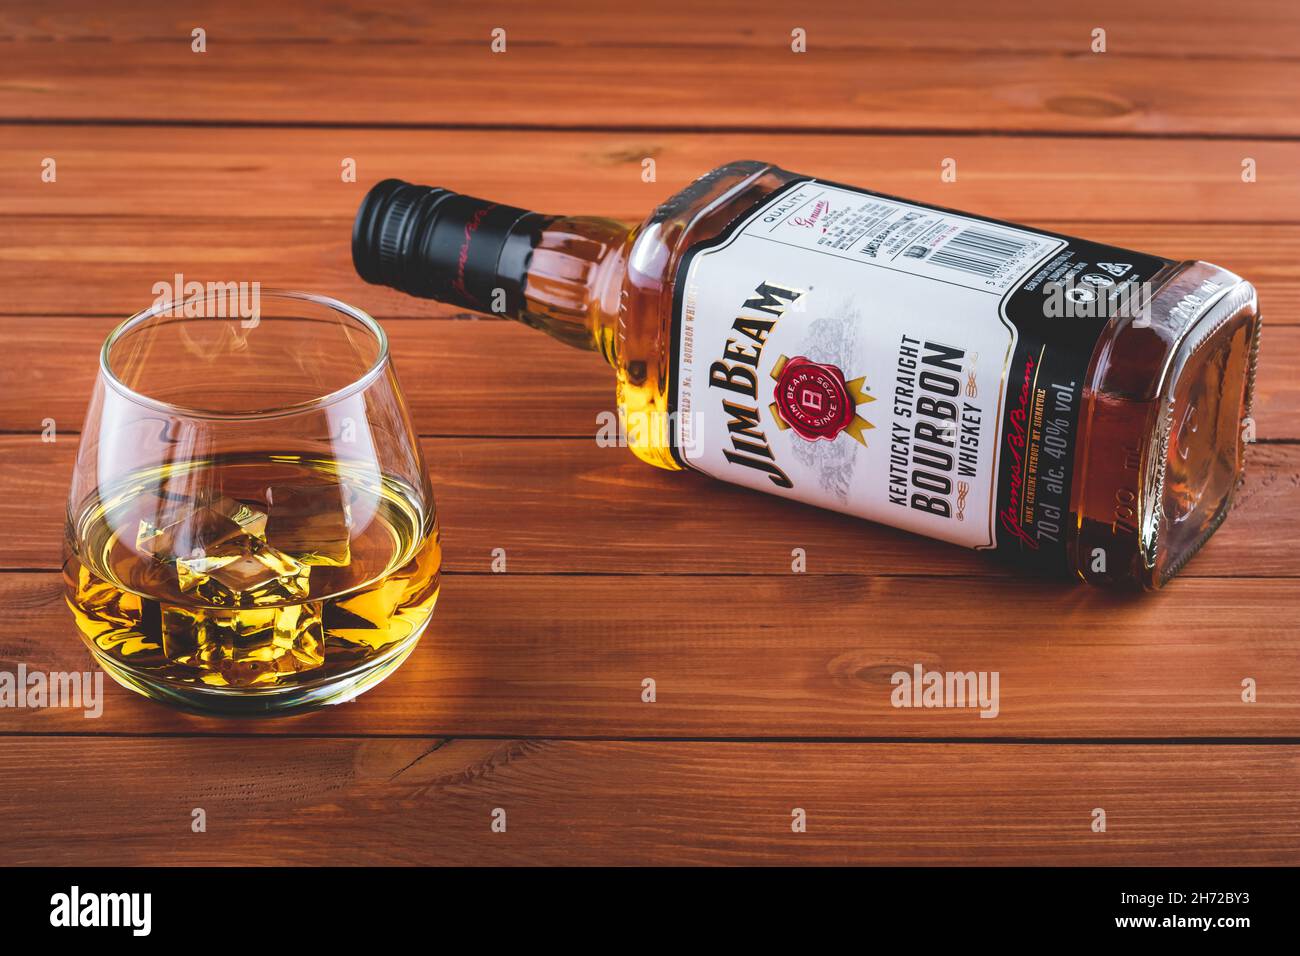 Eine Flasche Jim Beam auf einem braunen Holztisch. Ein Glas Bourbon mit Eis. Starkes Getränk. Alte Whiskey-Marke. Illustratives Editorial Stockfoto